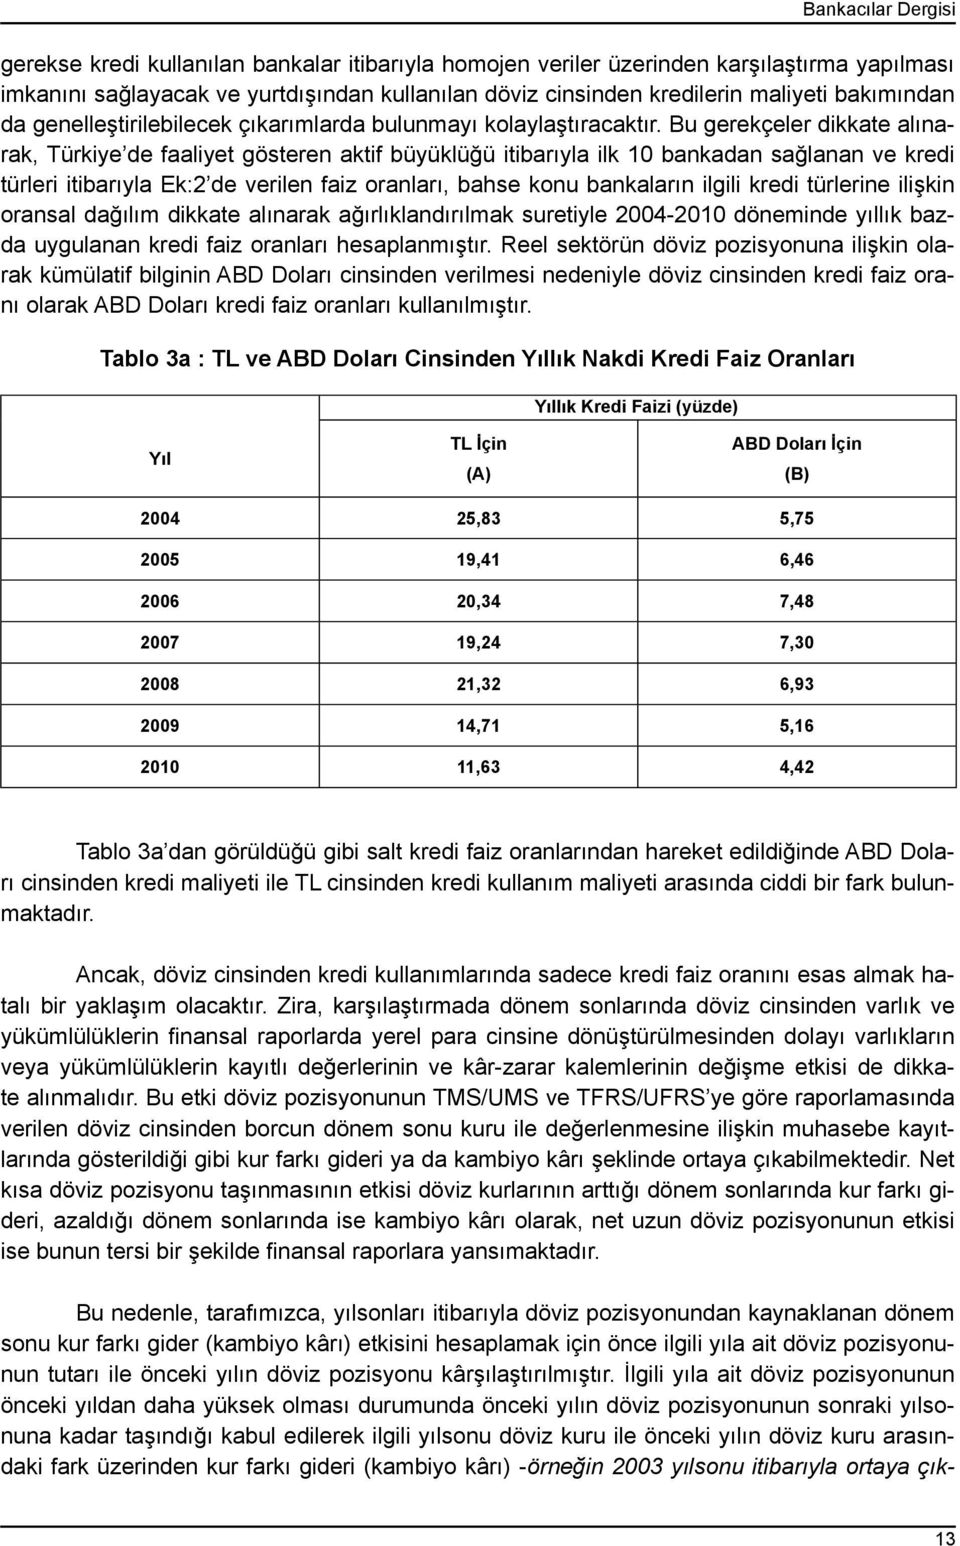 Bu gerekçeler dikkate alınarak, Türkiye de faaliyet gösteren aktif büyüklüğü itibarıyla ilk 10 bankadan sağlanan ve kredi türleri itibarıyla Ek:2 de verilen faiz oranları, bahse konu bankaların